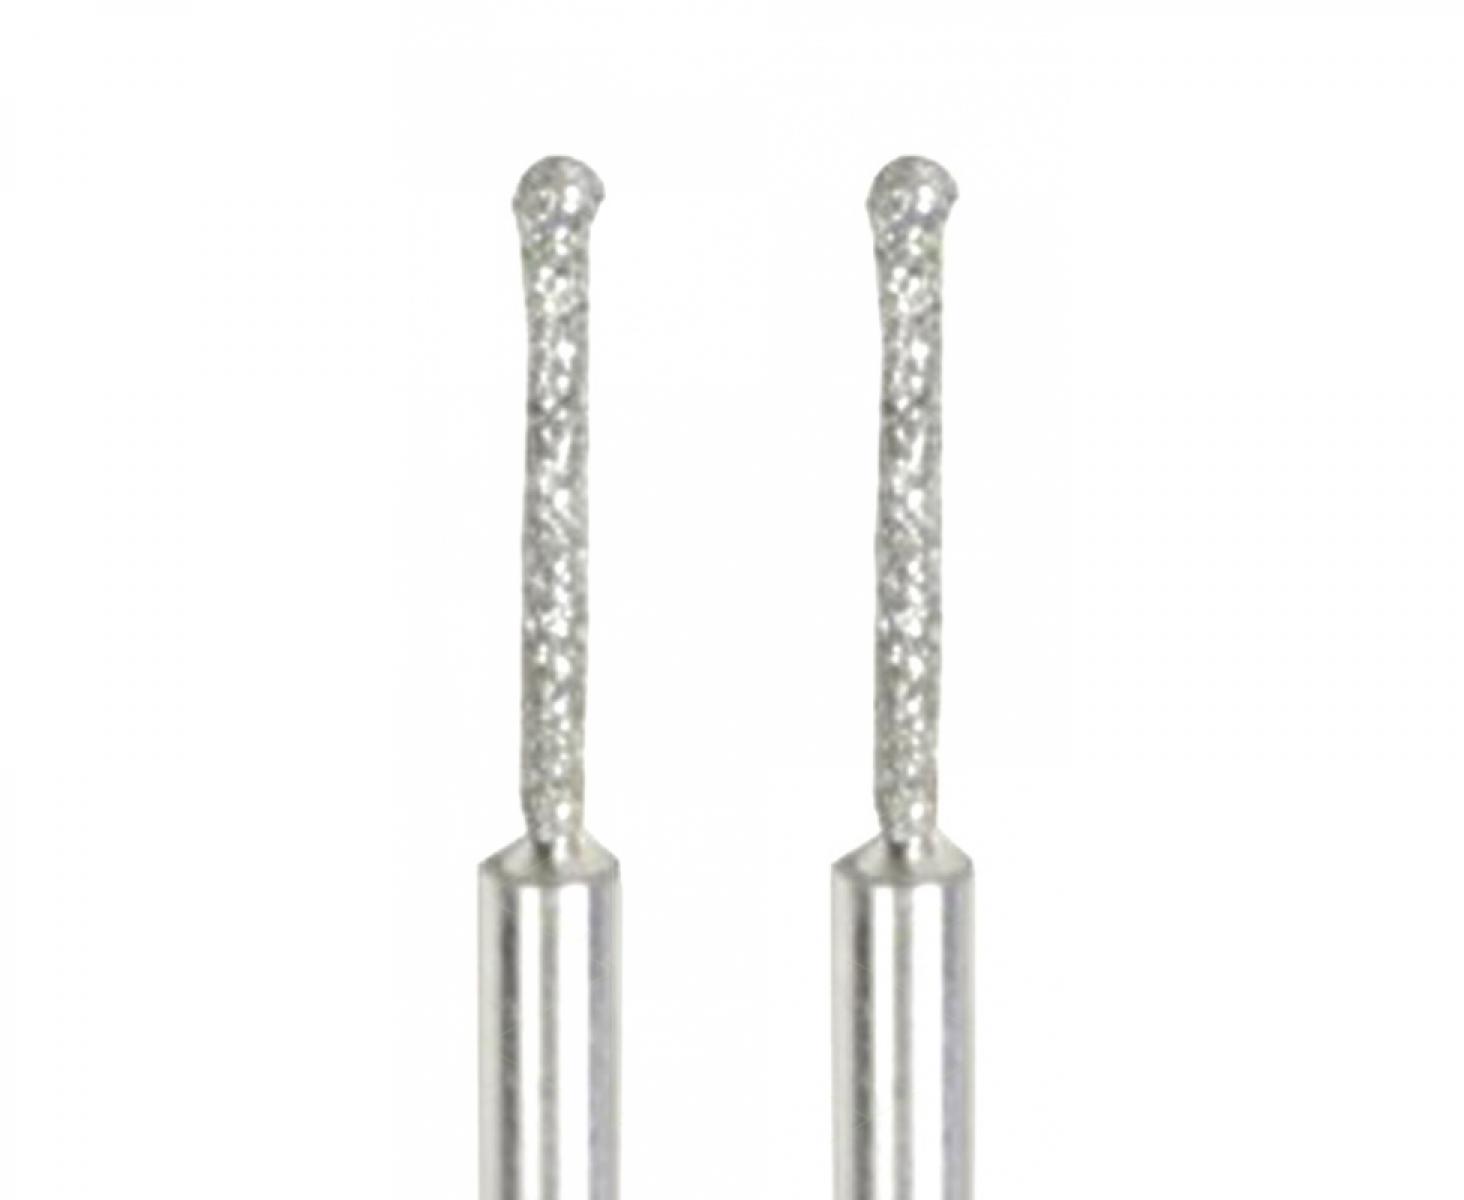 картинка Бор с алмазным напылением (шар 1.2 мм) Proxxon 28230 2 шт. от магазина "Элит-инструмент"